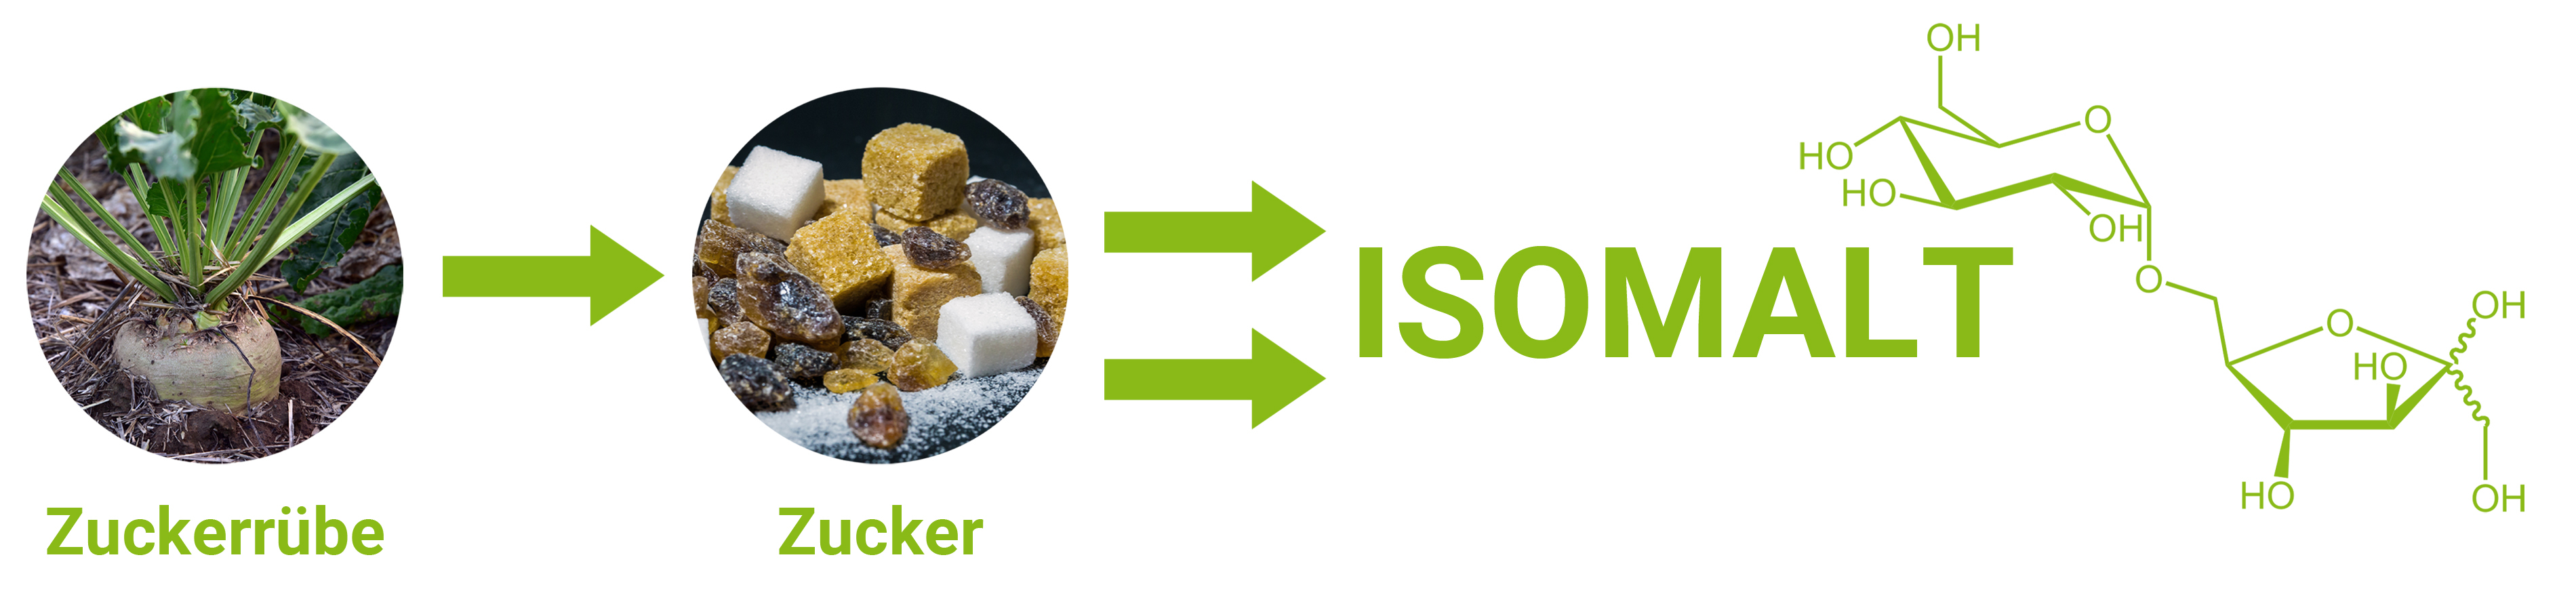 Isomalt ist ein Zuckeraustauschstoff, der aus Saccharose gewonnen wird. 